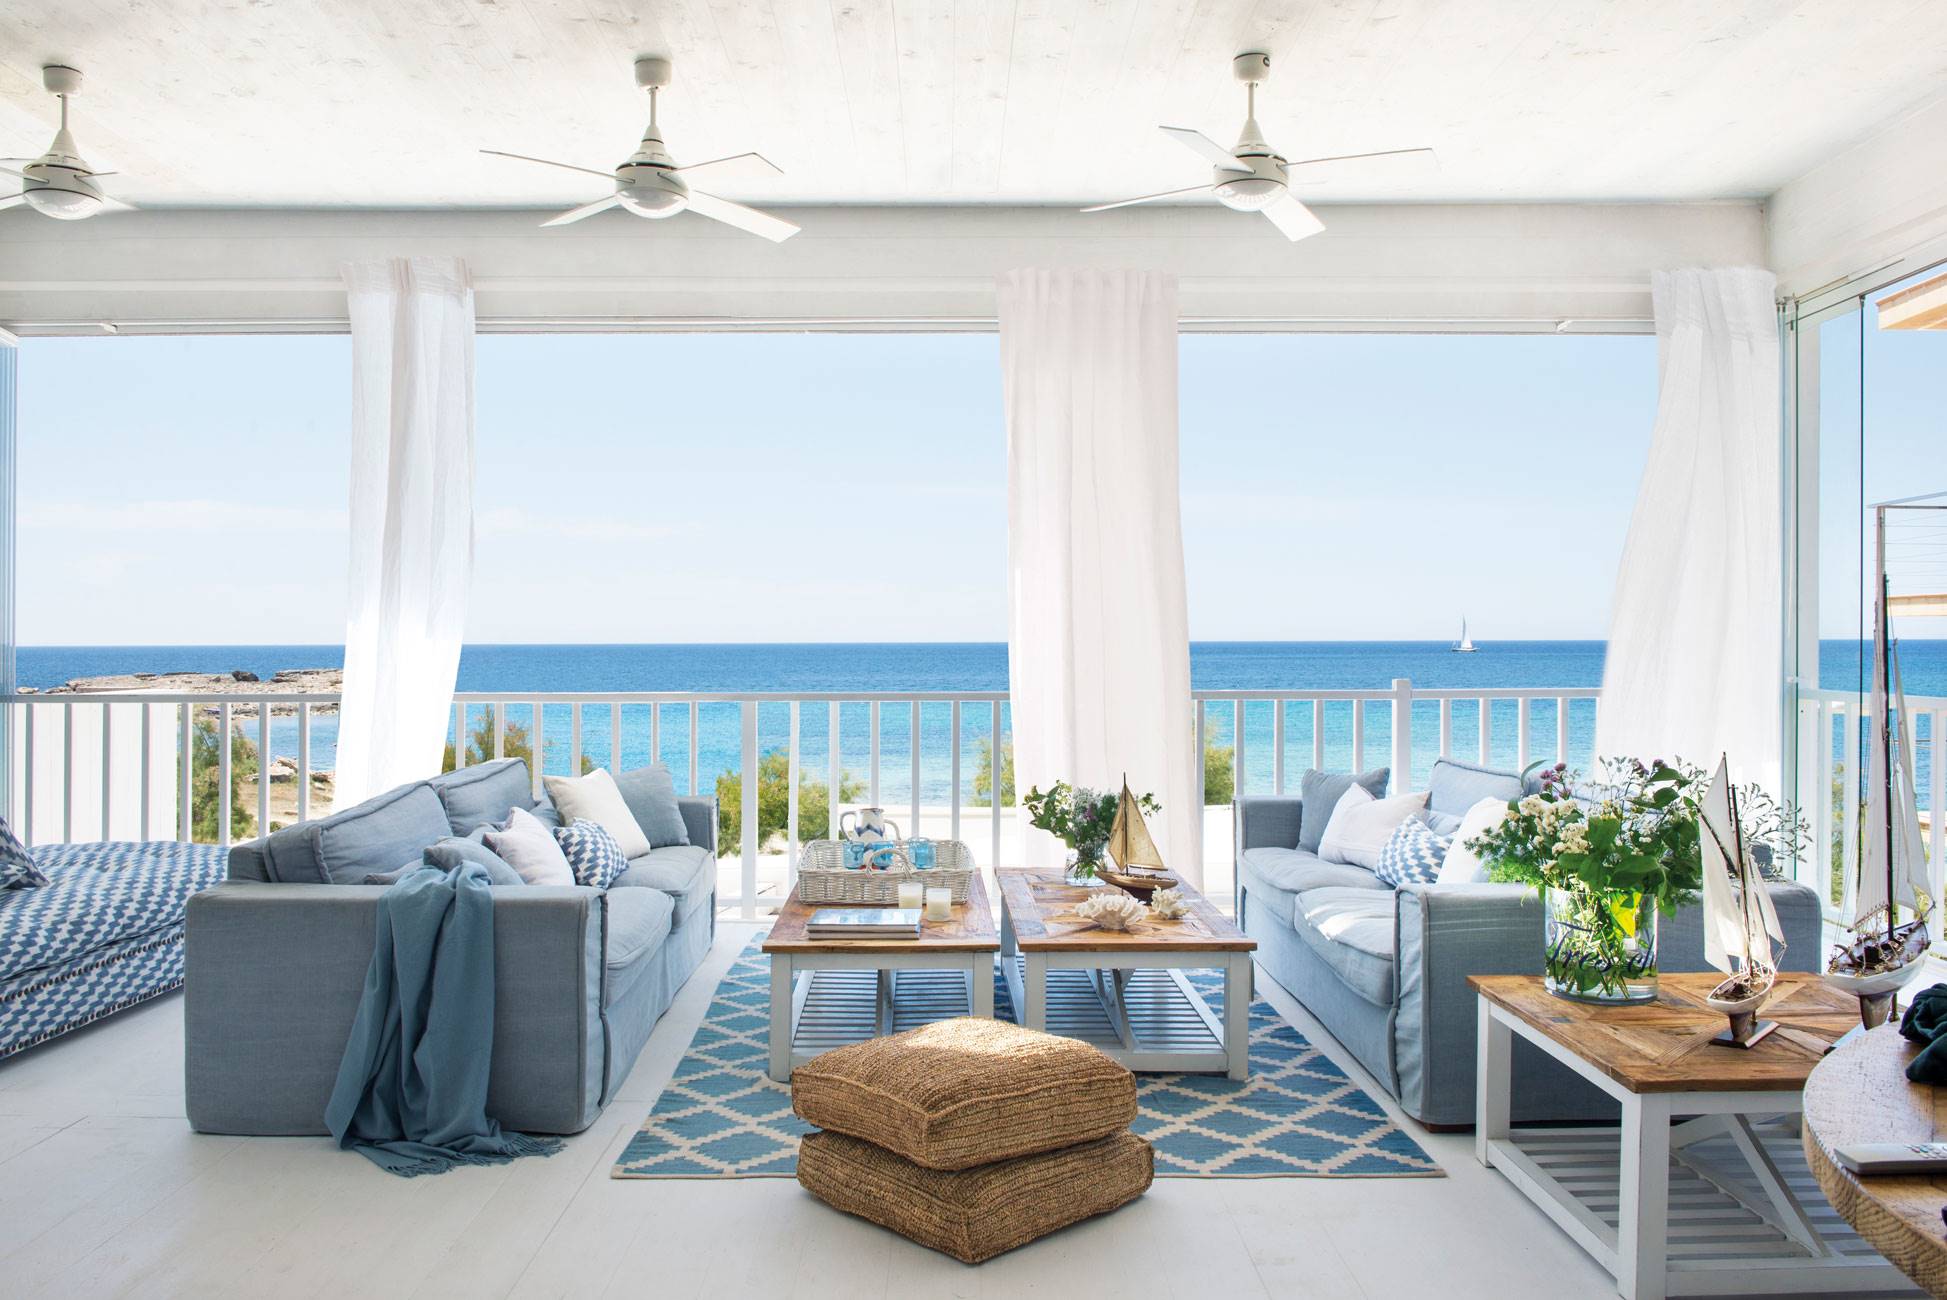 Salón de verano con sofás azules y ventiladores de techo con vistas al mar.